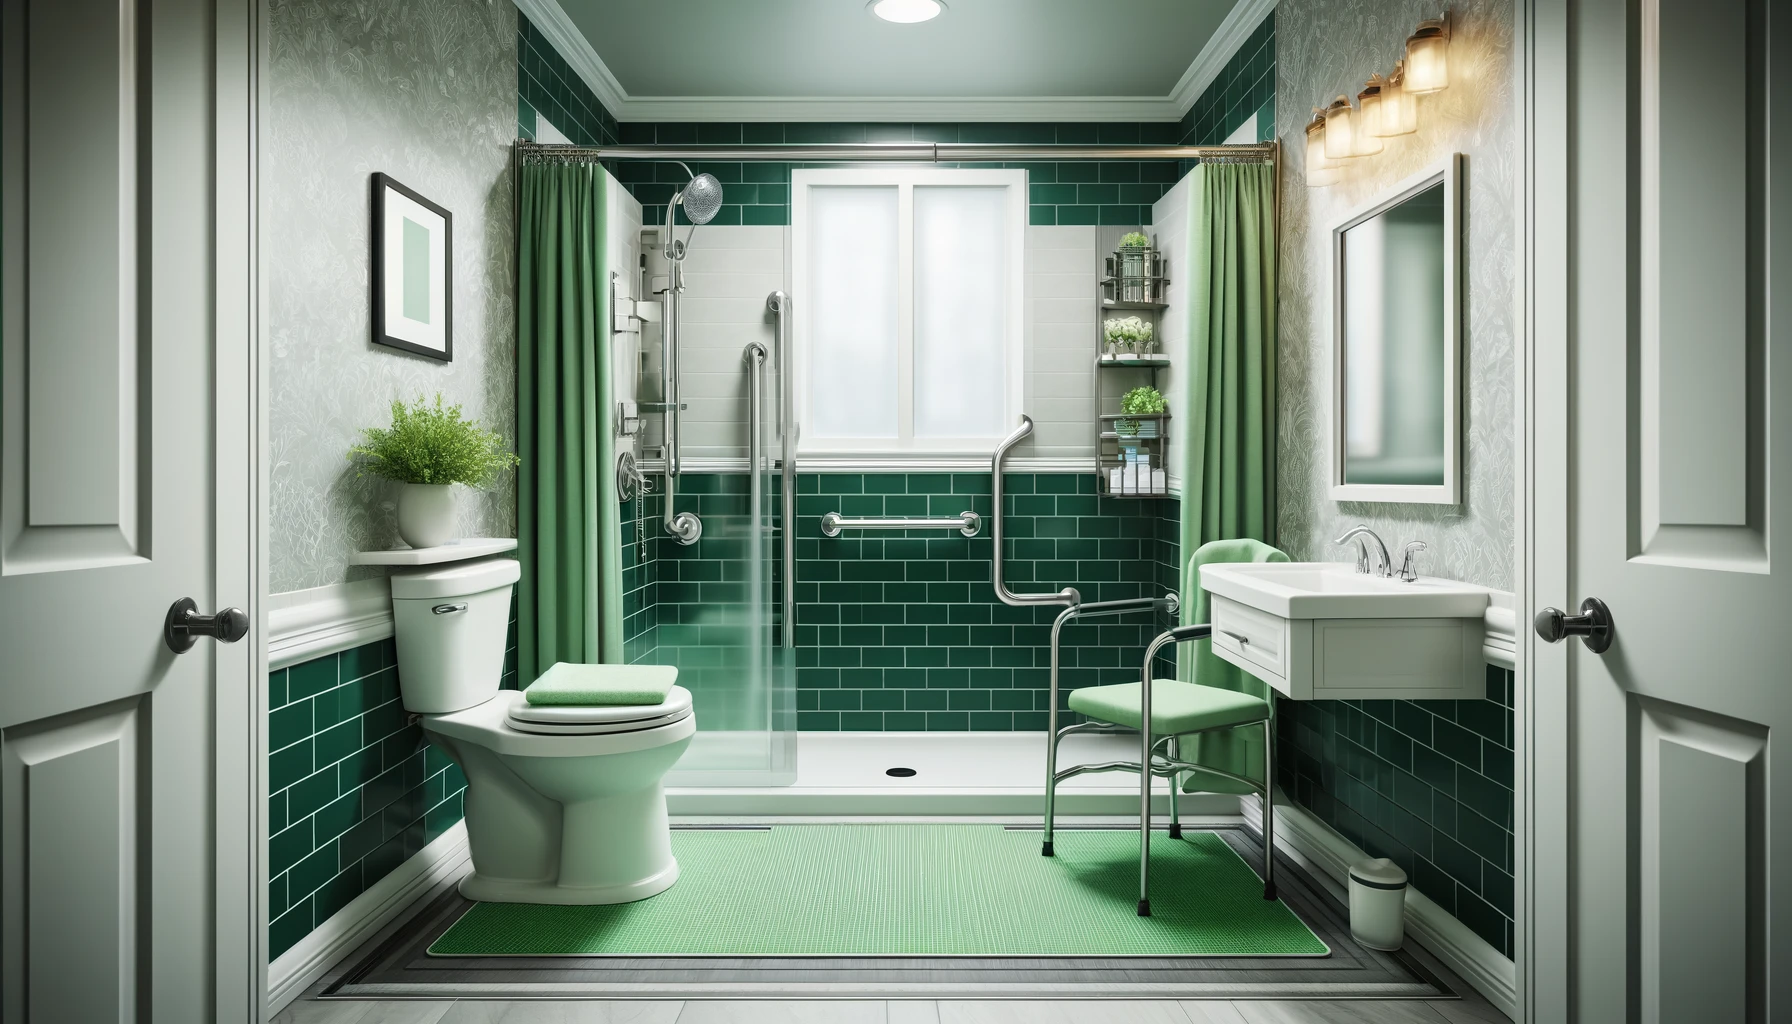 Banheiro moderno com azulejos verdes, luminárias brancas e área de chuveiro. um tapete verde e uma cadeira estão presentes, com plantas decorativas dando um toque de natureza.